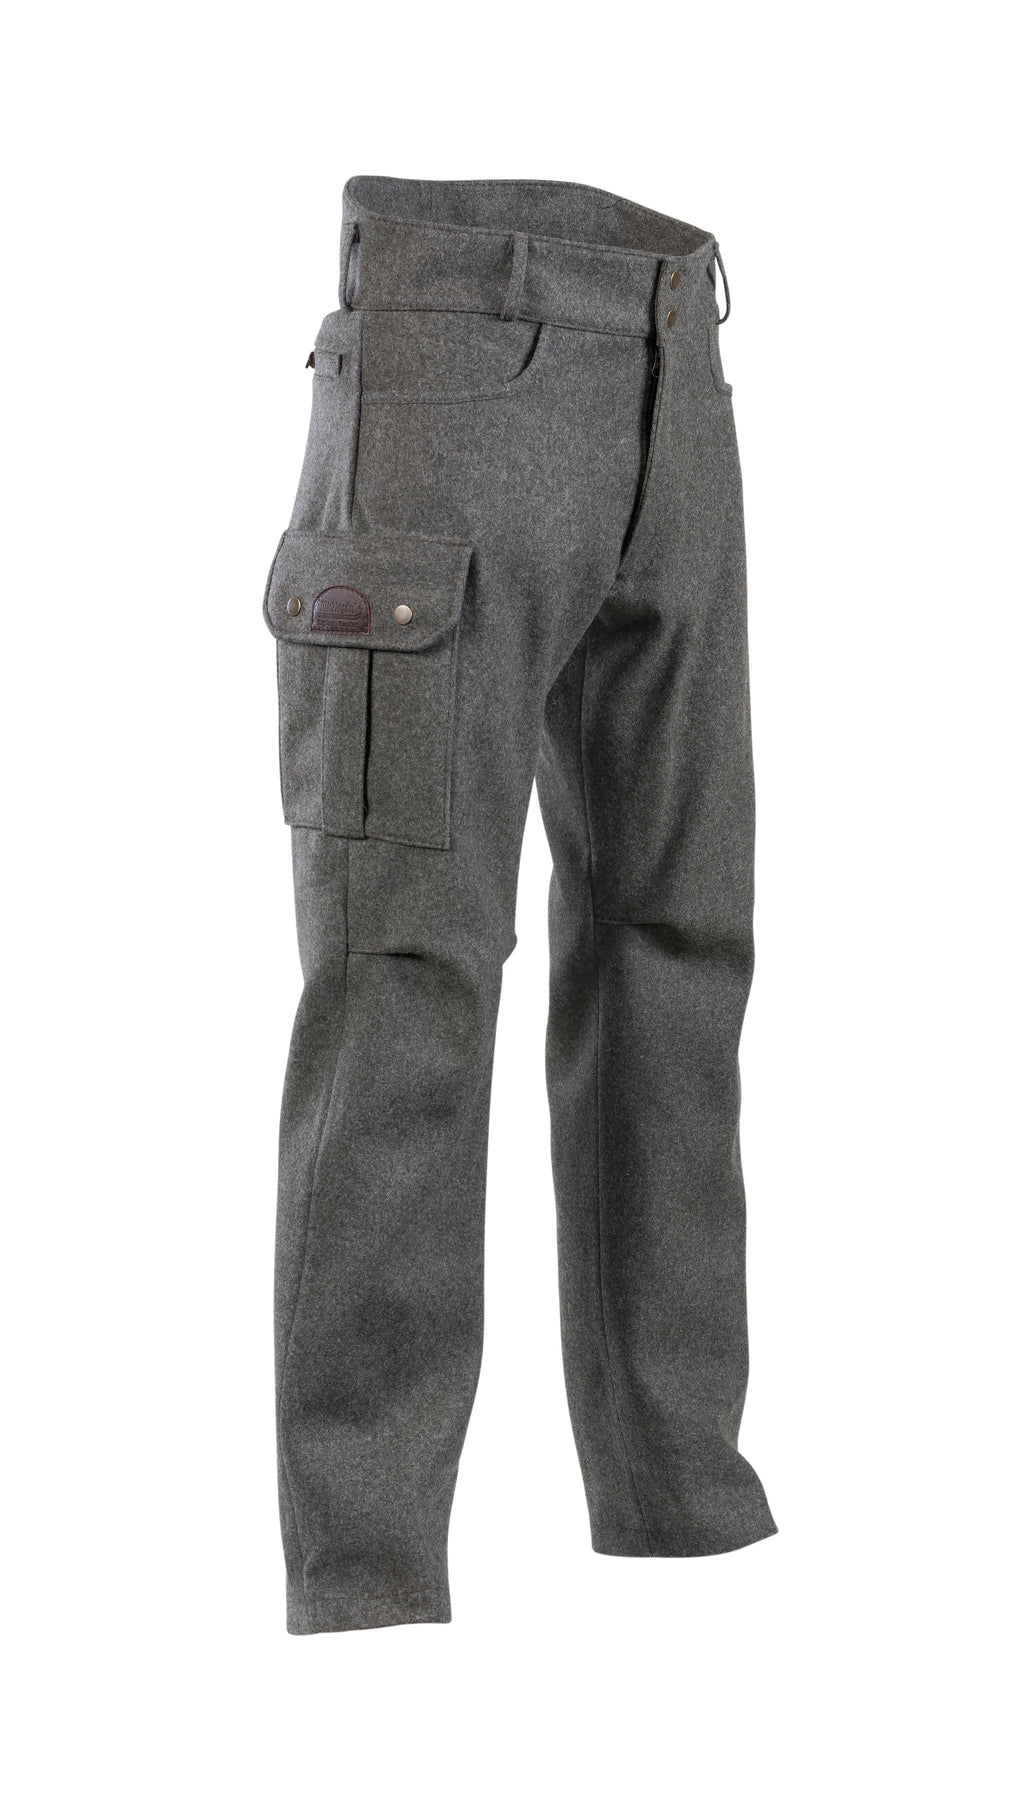 Damier Wool Workwear Pants - Ready-to-Wear